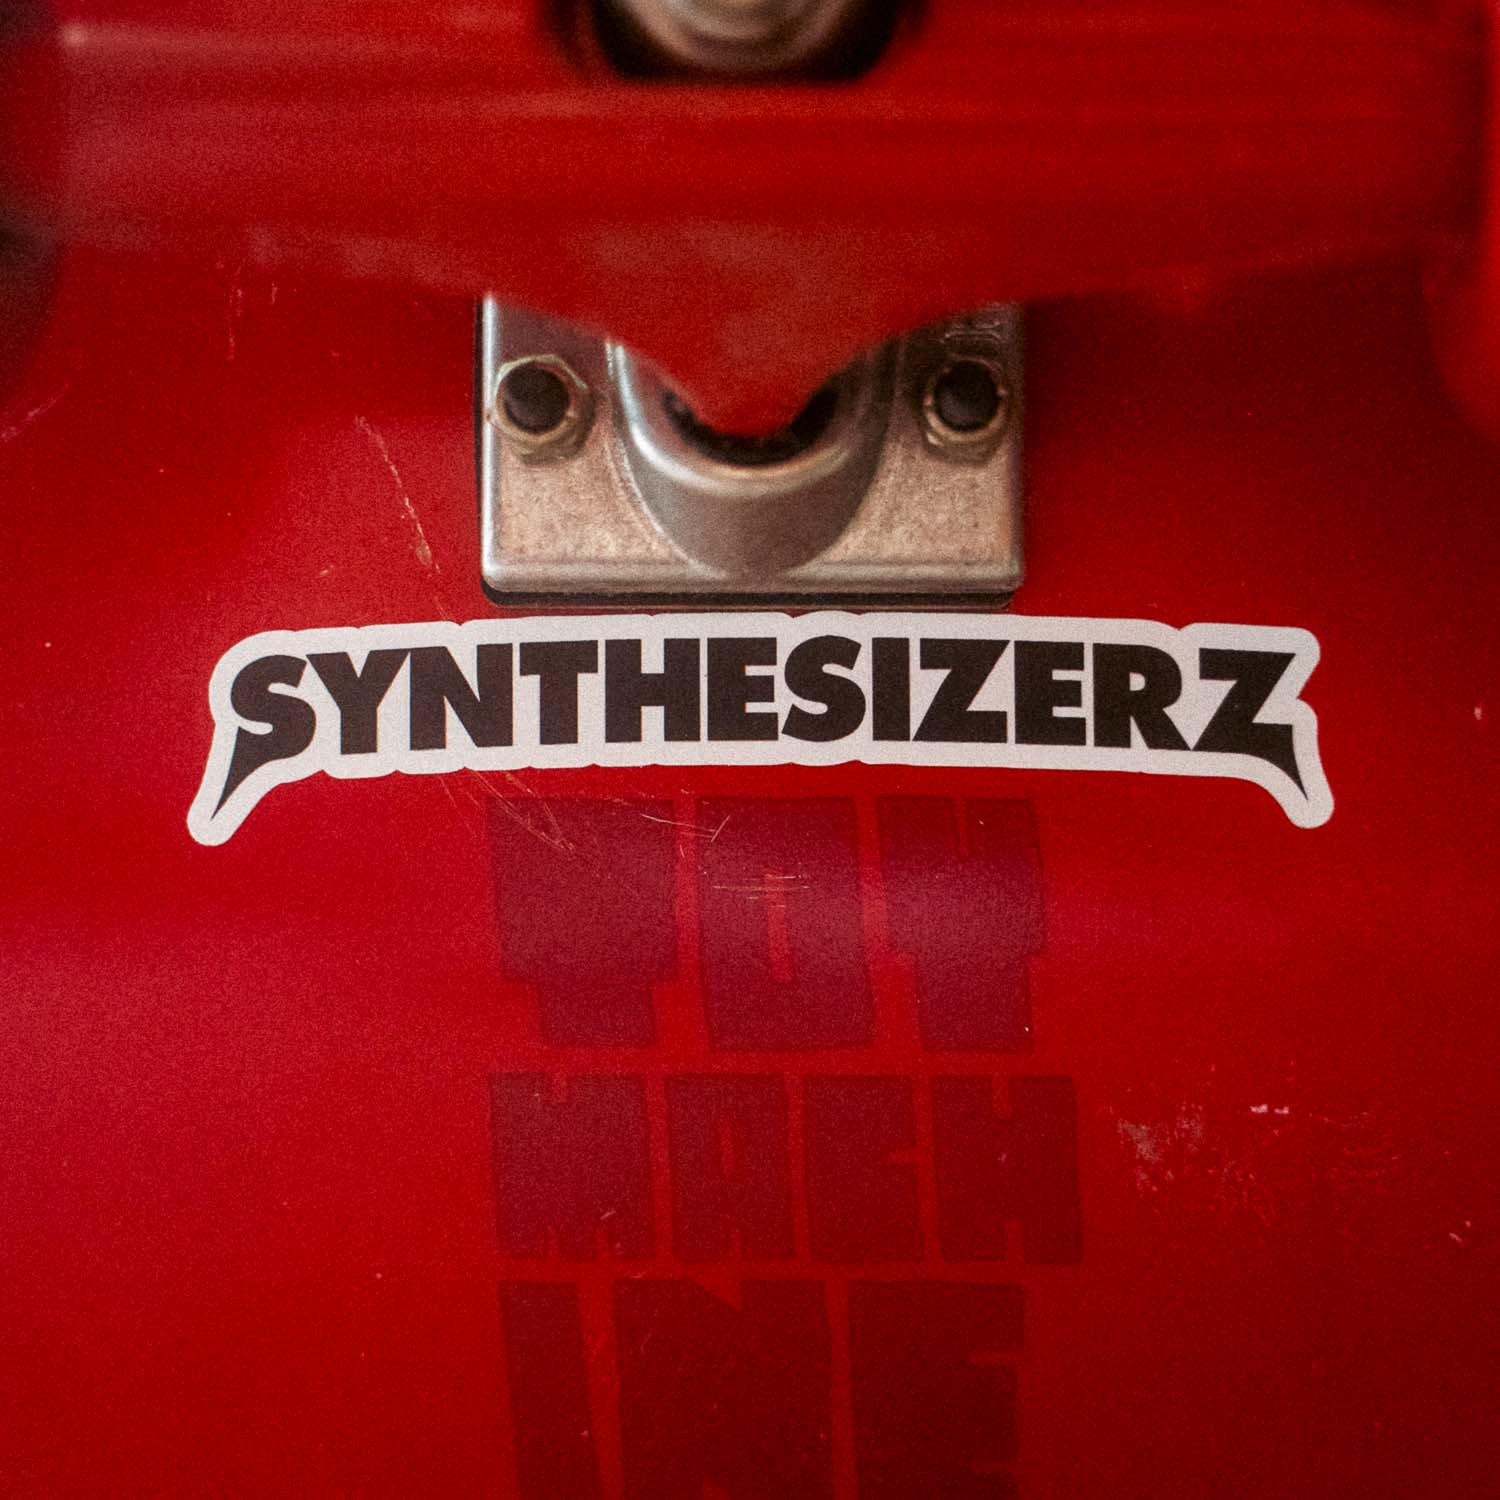 The Synthesizerz Sticker